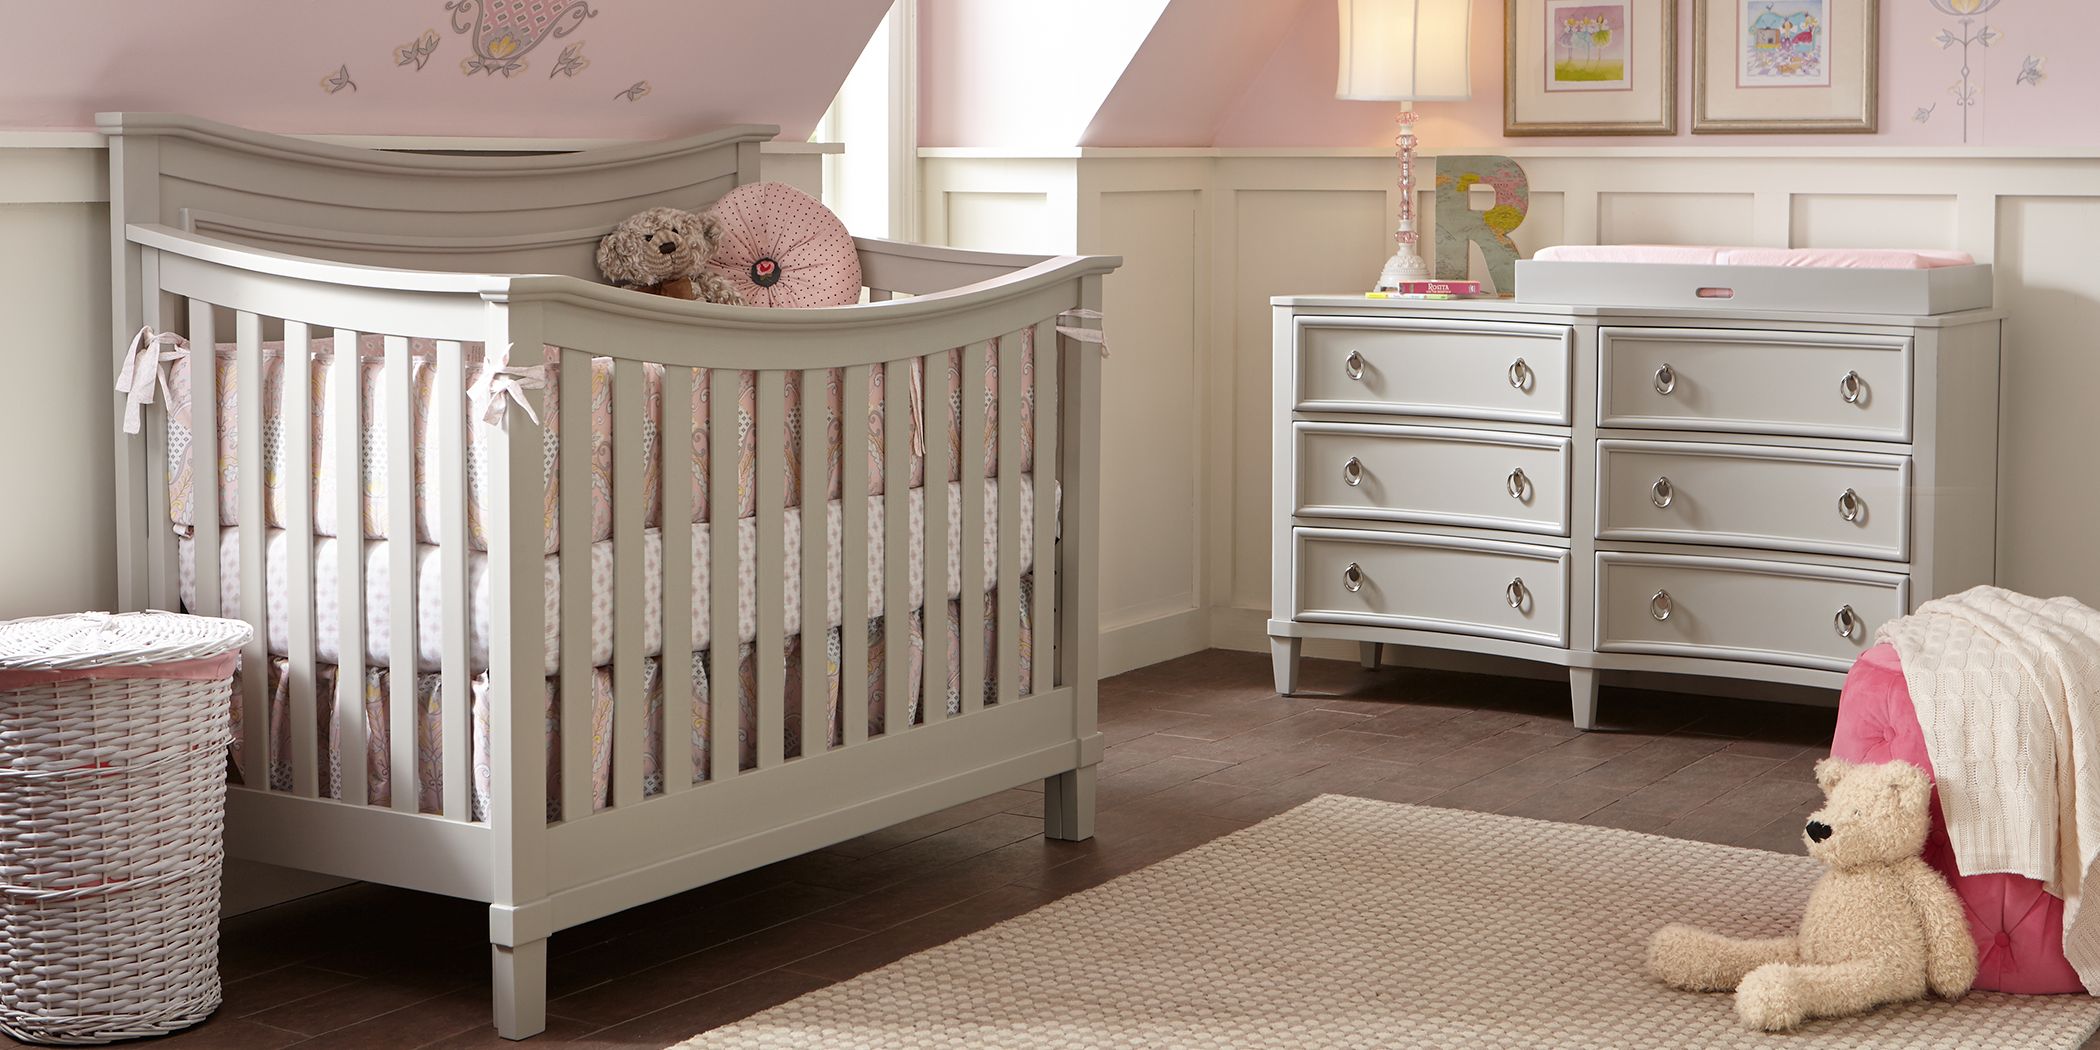 baby's bedroom set